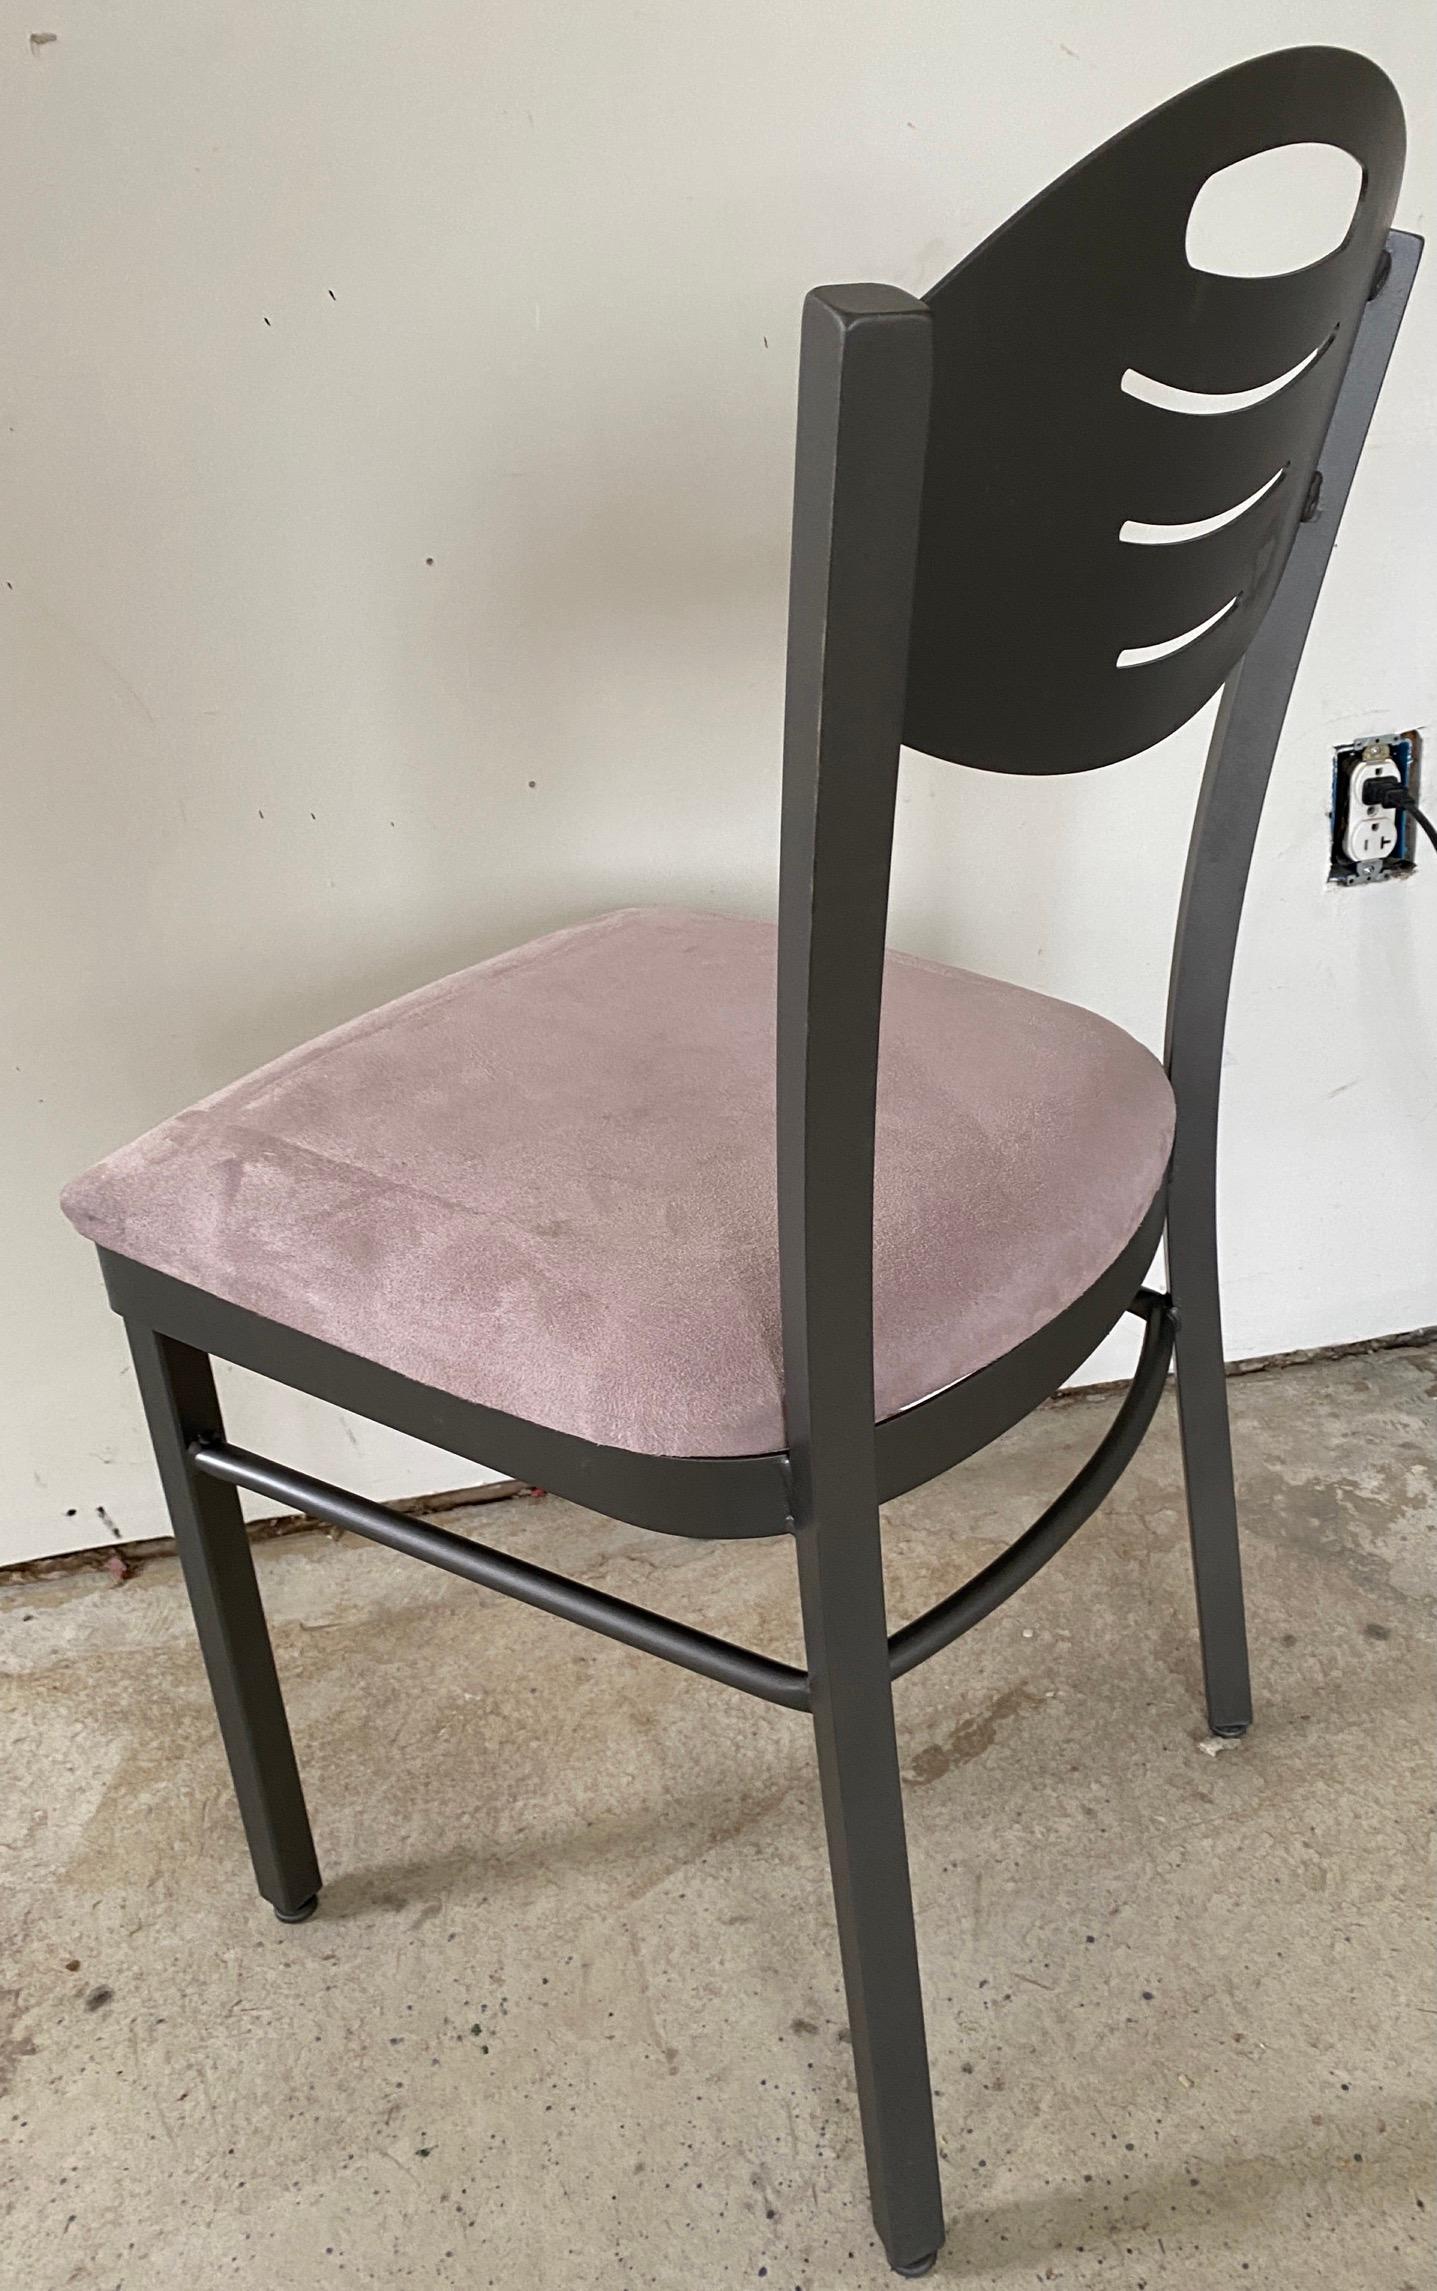 Ensemble de 8 chaises de salle à manger contemporaines MCM en métal peint en gris métal avec des sièges tapissés gris.
Ces chaises de style postmoderne sont à l'image du groupe Memphis de Michele De Lucci. 
Utilisez-les comme chaises de salle à